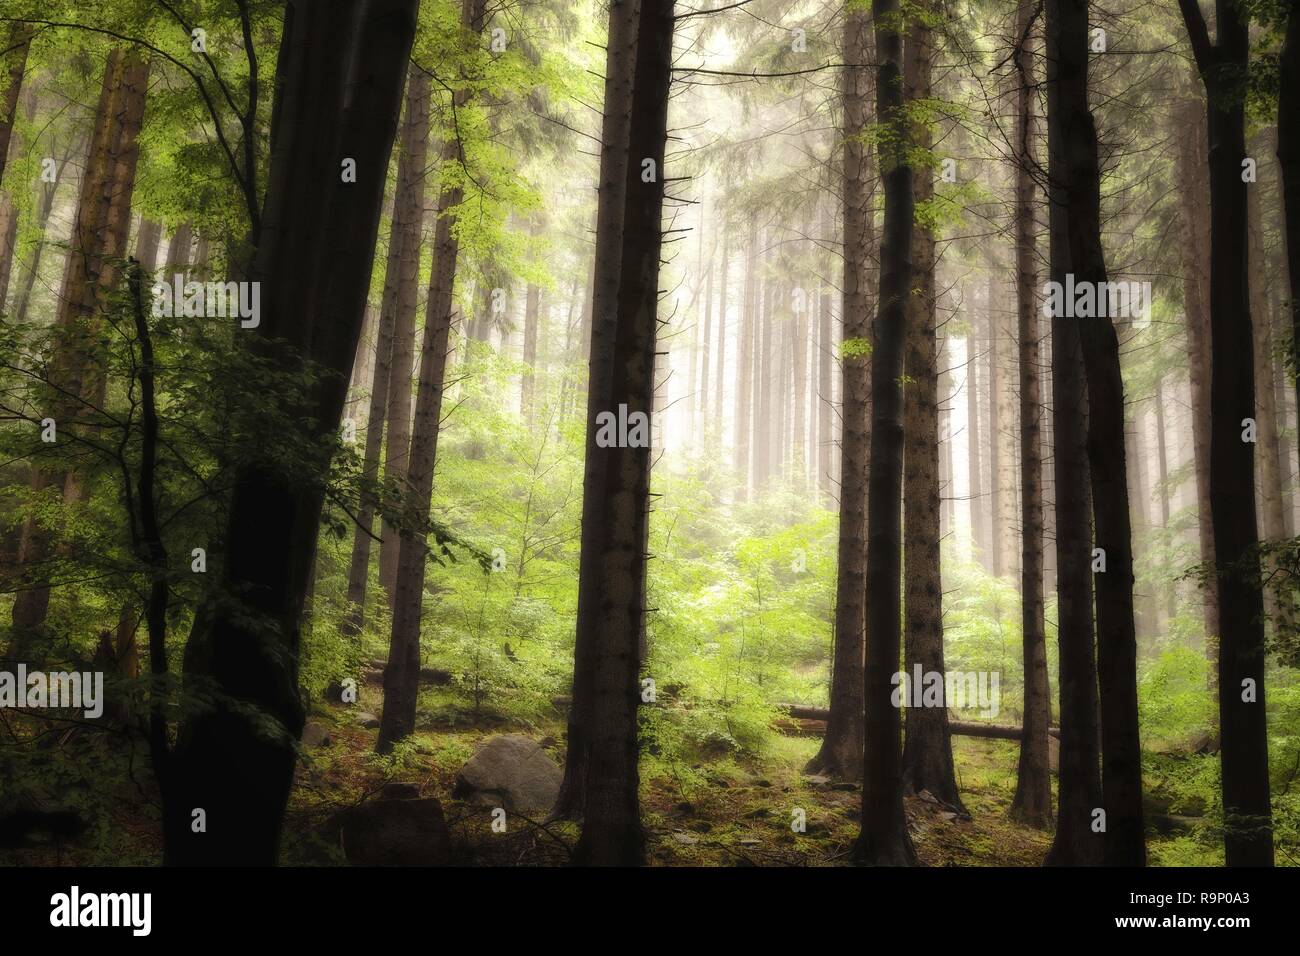 Dentro de un bosque de abeto con enormes árboles y niebla en el fondo Foto de stock